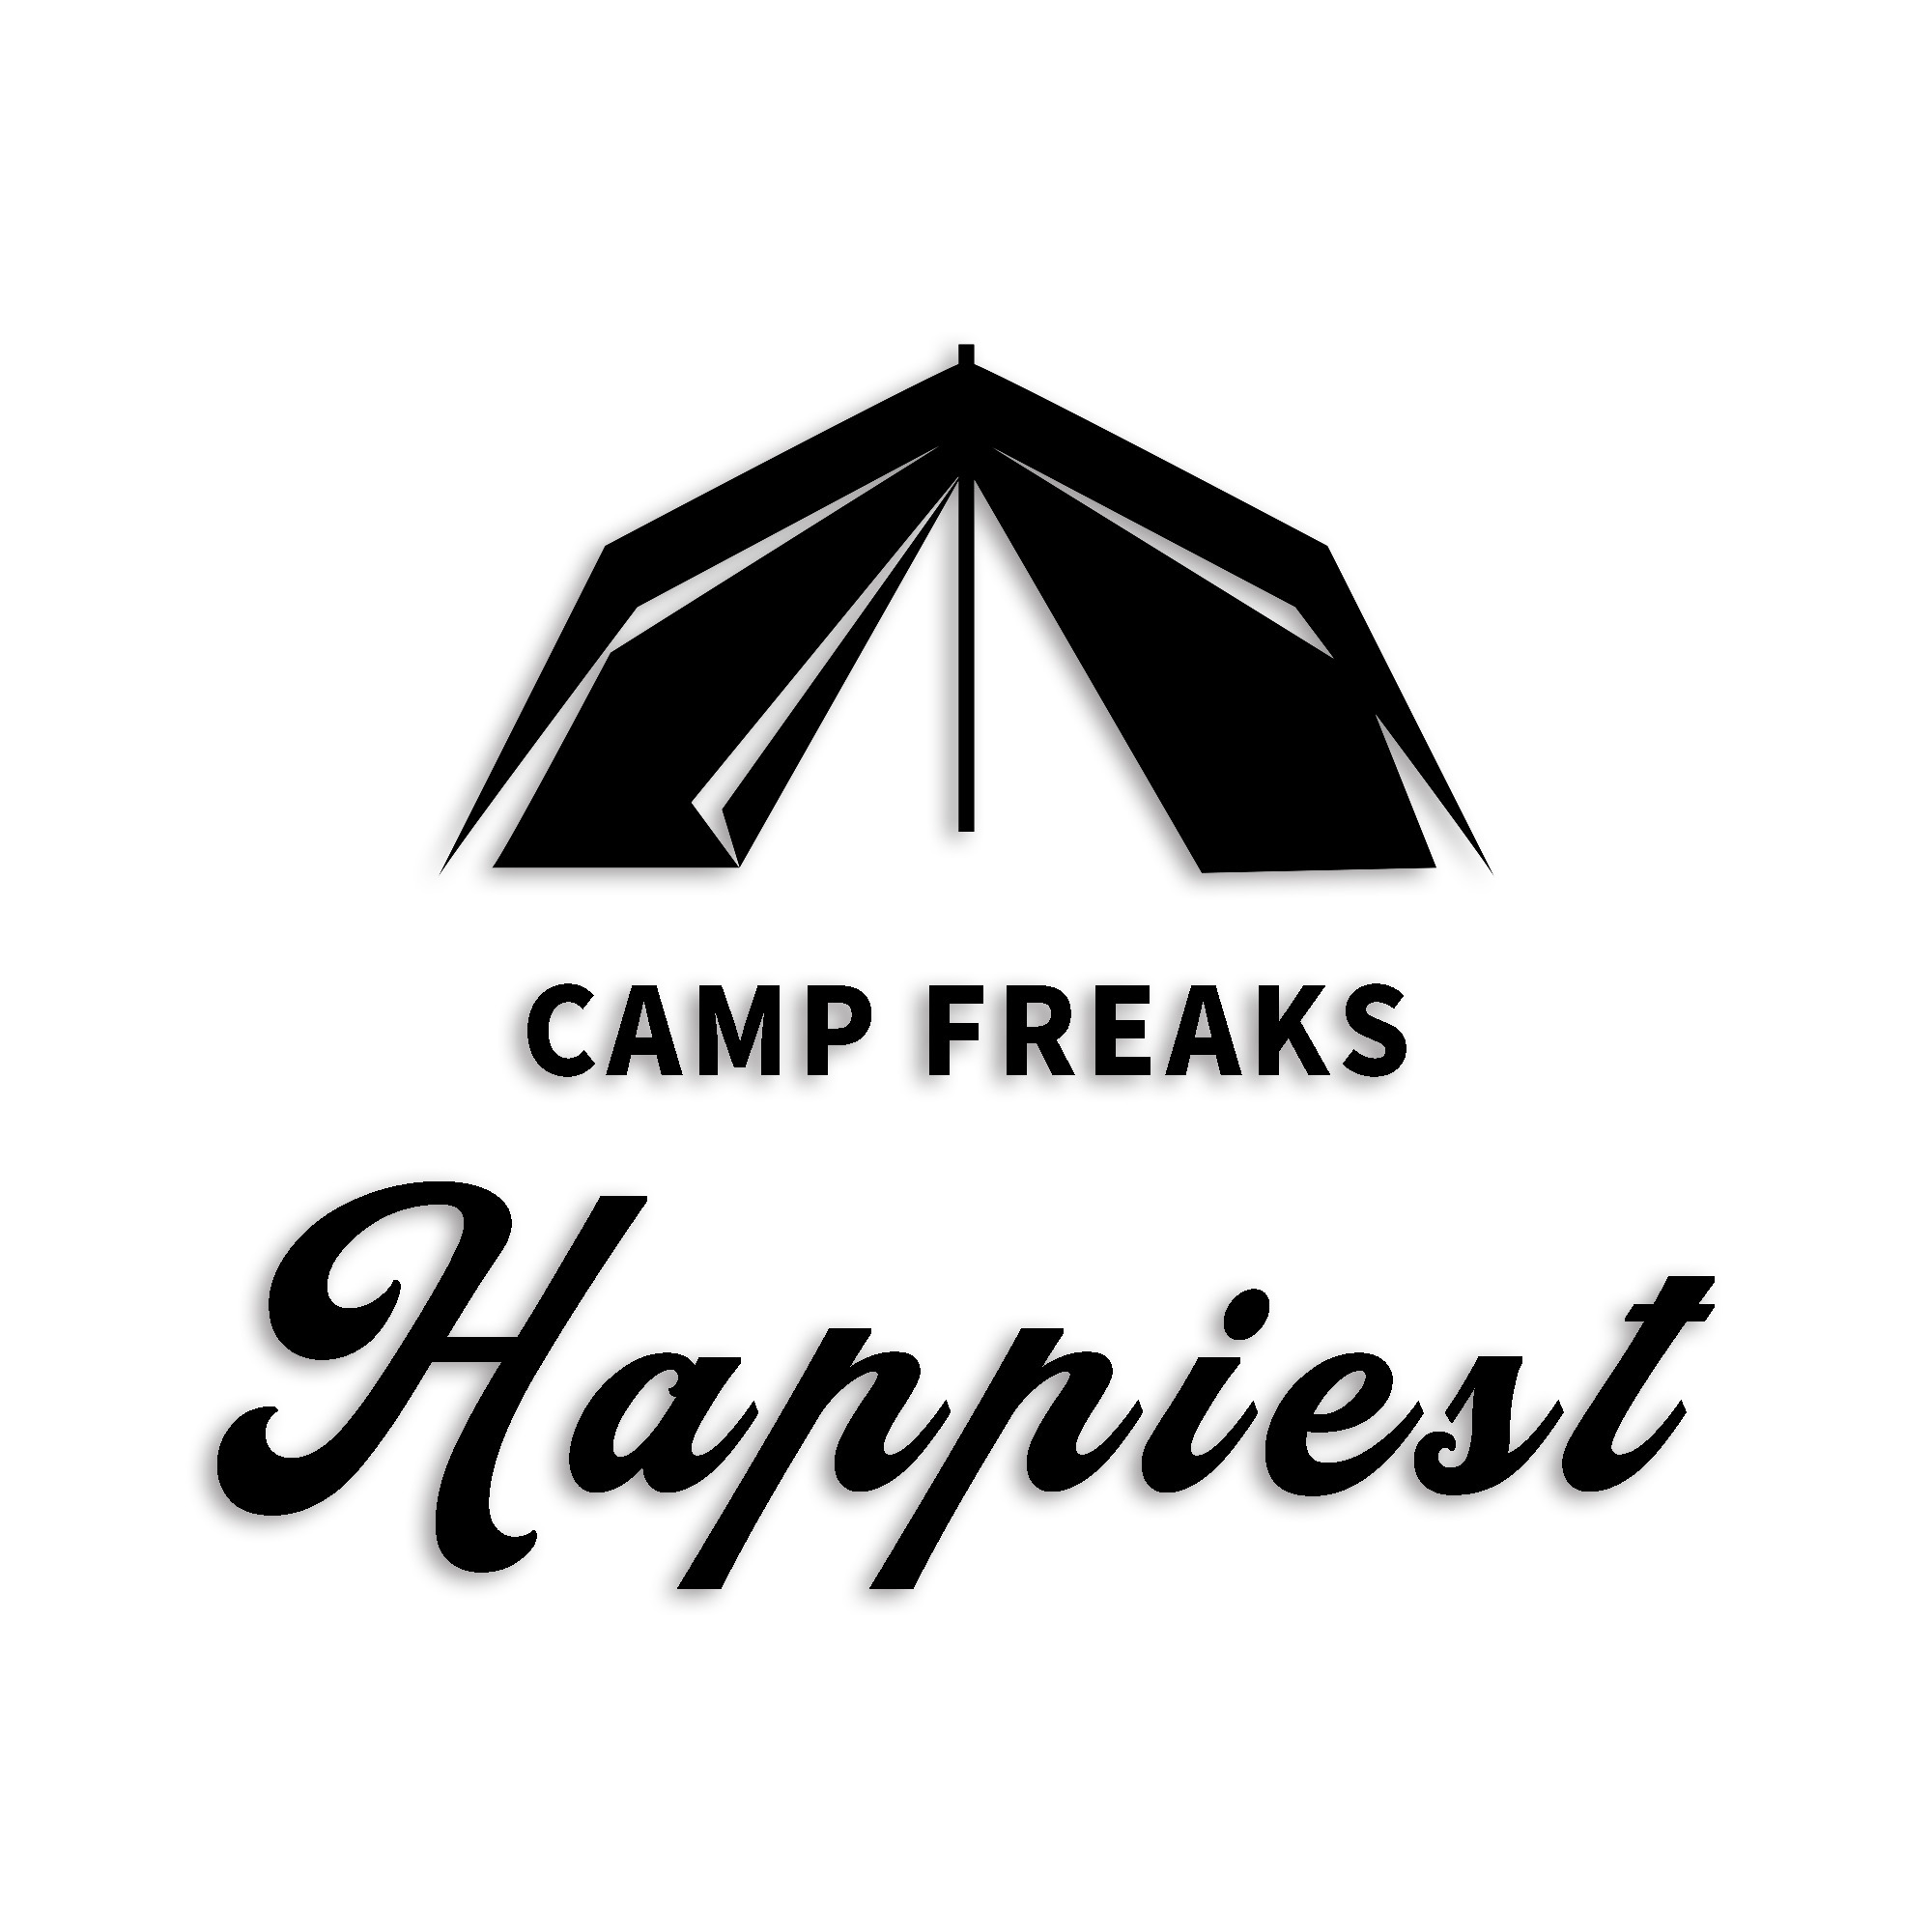 キャンプフリークス カッティング ステッカー シール outdoor 山 斧 マーク シルエット シンプル 防水 車 デカール